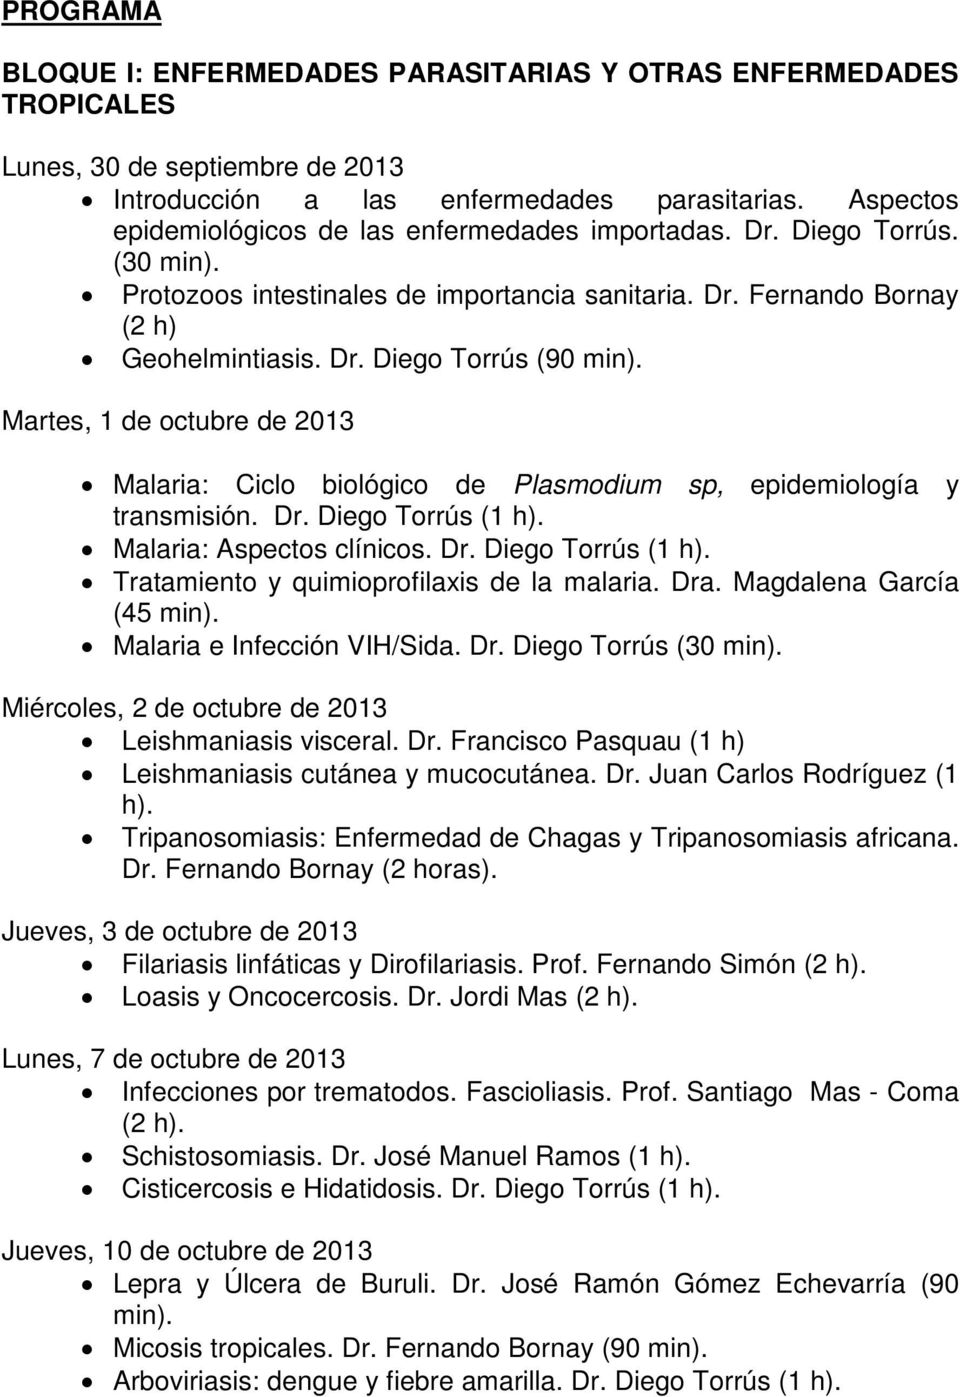 Martes, 1 de octubre de 2013 Malaria: Ciclo biológico de Plasmodium sp, epidemiología y transmisión. Dr. Diego Torrús (1 h). Malaria: Aspectos clínicos. Dr. Diego Torrús (1 h). Tratamiento y quimioprofilaxis de la malaria.